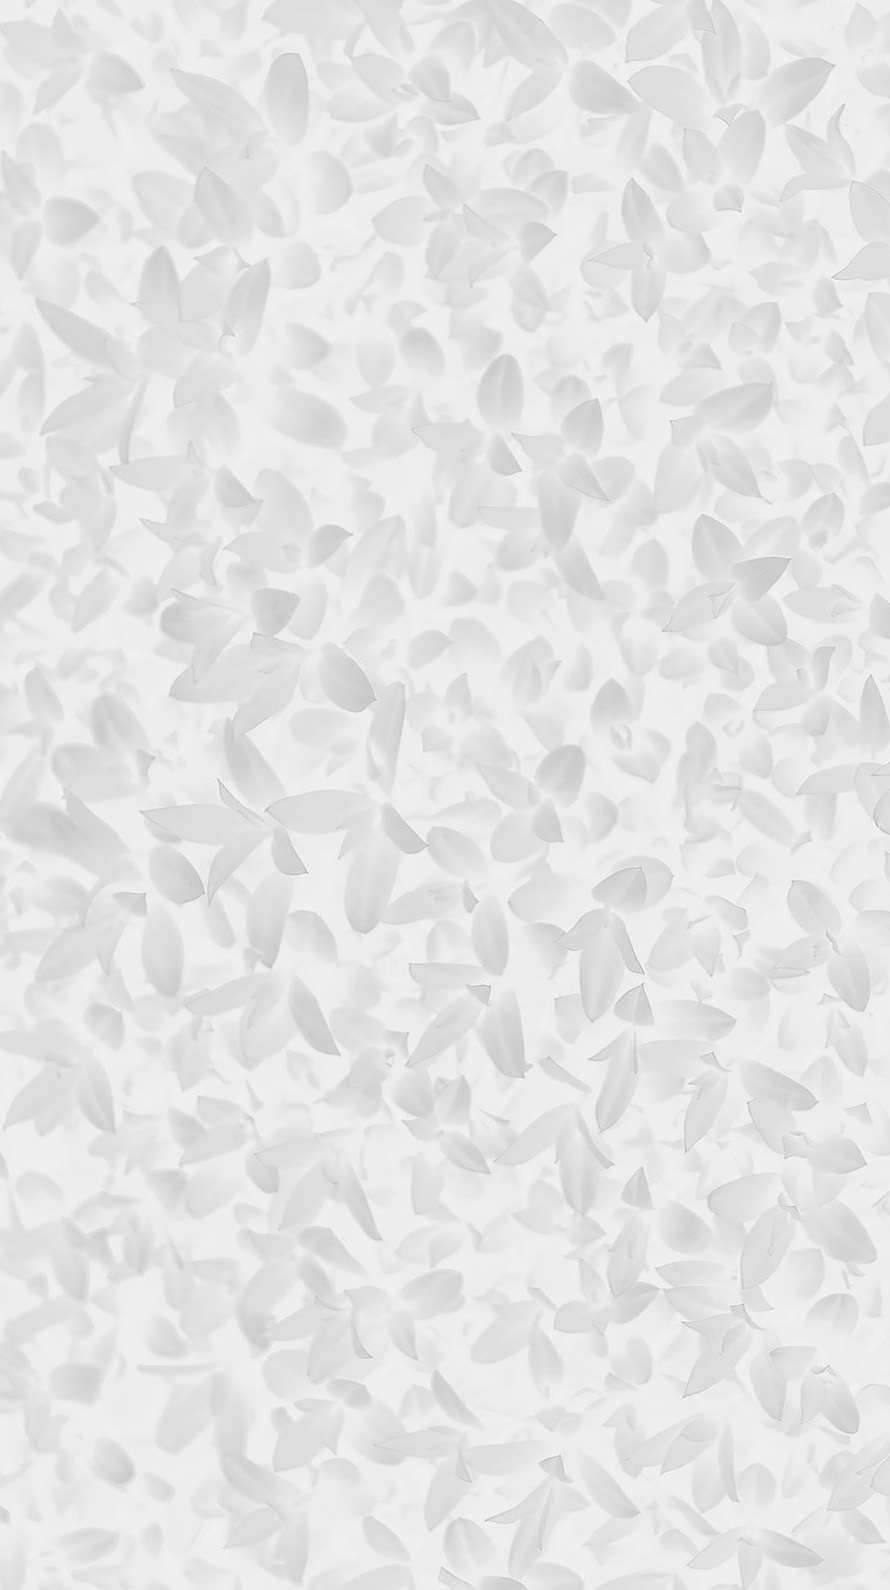 綺麗な白い花模様 Iphone6壁紙 Wallpaperbox